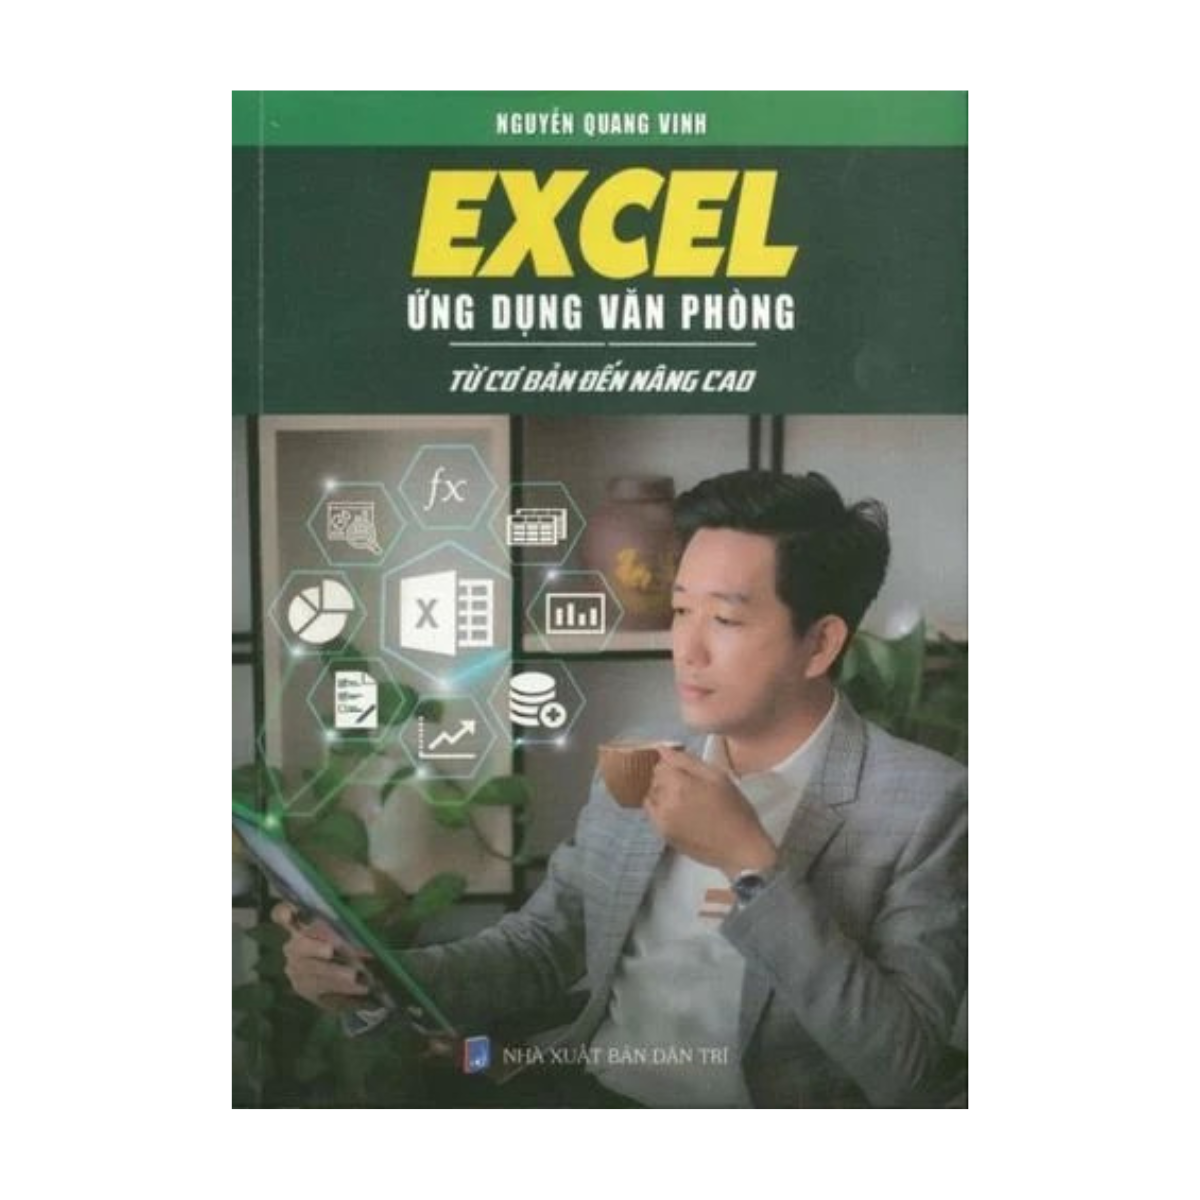 Combo Sách Word Ứng Dụng Văn Phòng + Excel Ứng Dụng Văn Phòng (Bộ 2 Cuốn)